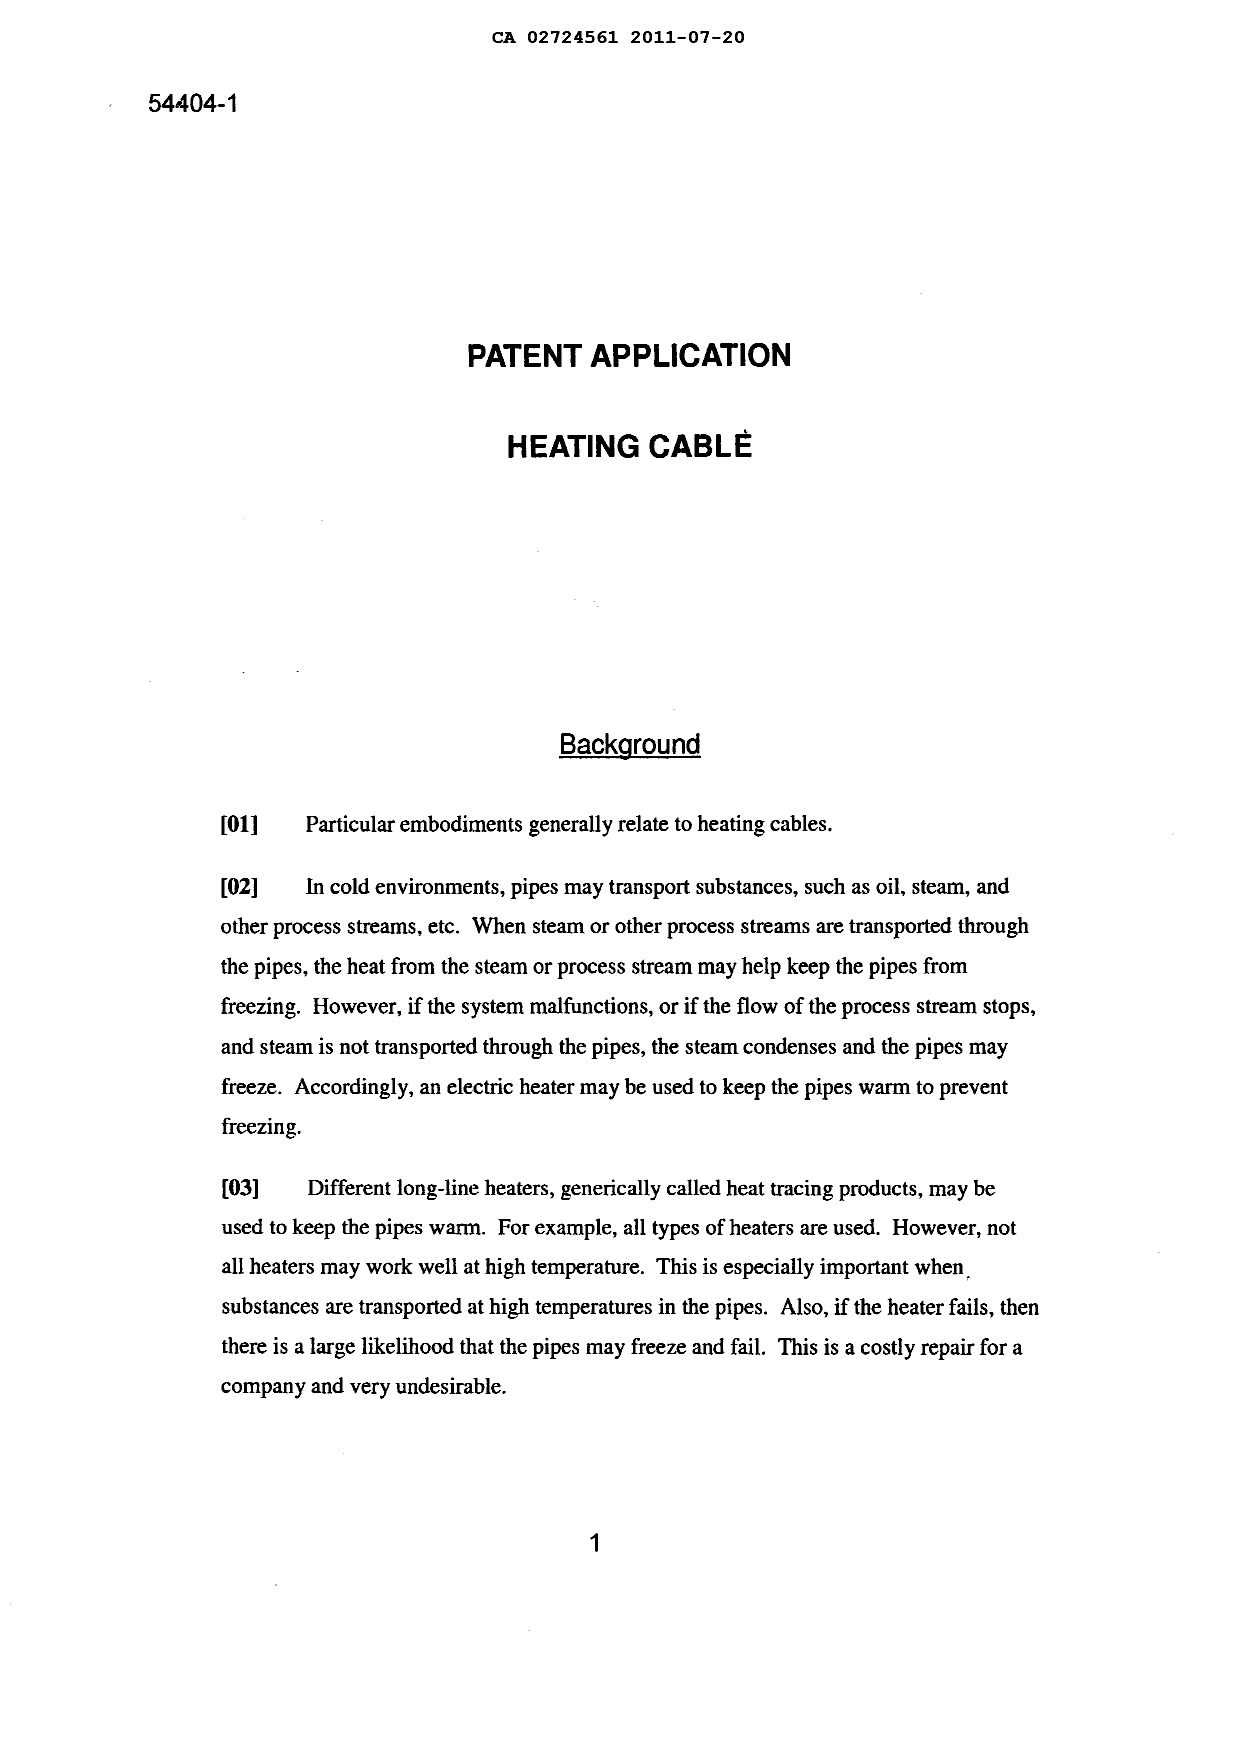 Canadian Patent Document 2724561. Description 20101220. Image 1 of 17